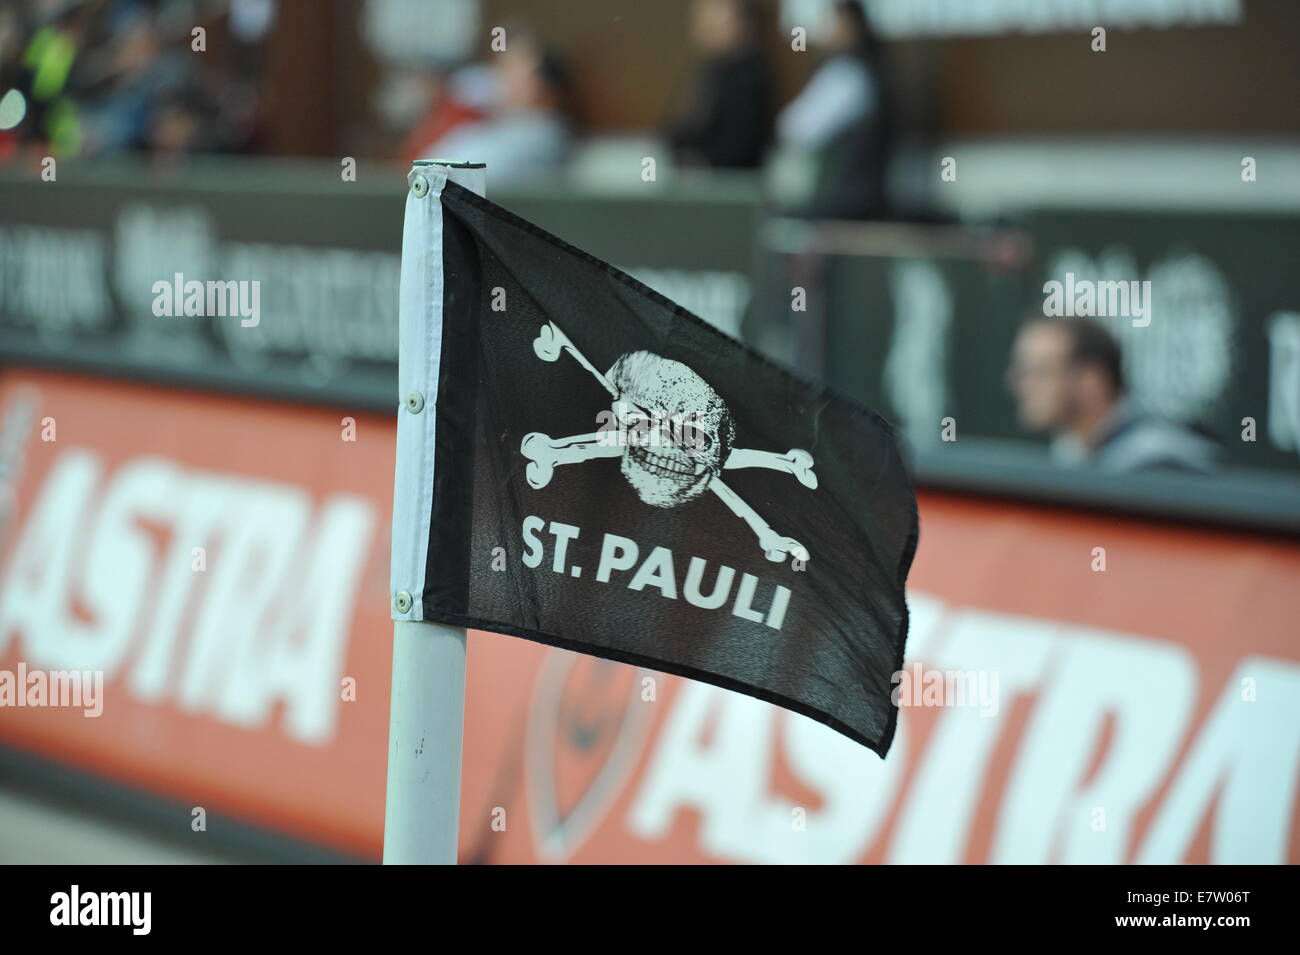 Eckfahne FC St Pauli im Millerntor-Stadion, Amburgo, Deutschland. Foto Stock